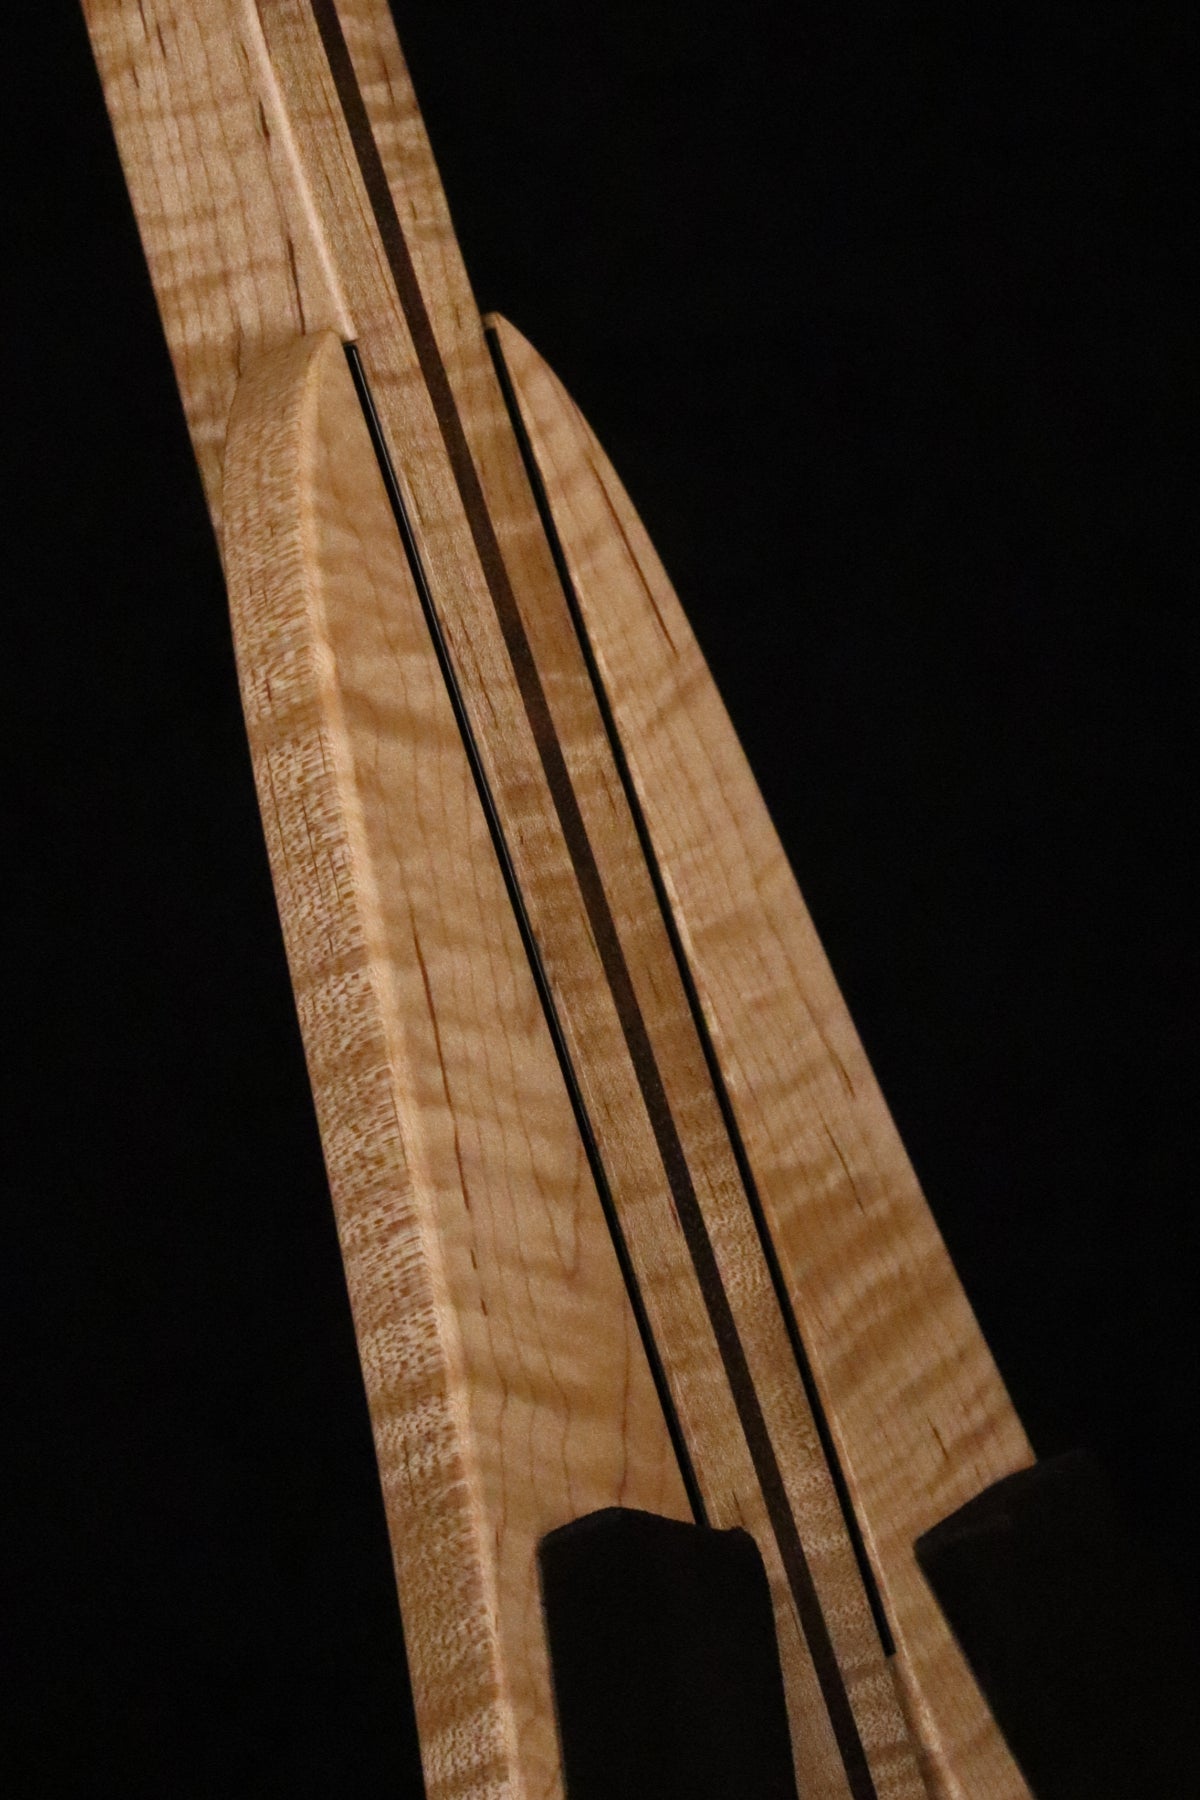 Folding curly maple and walnut wood ukulele floor stand closeup front image